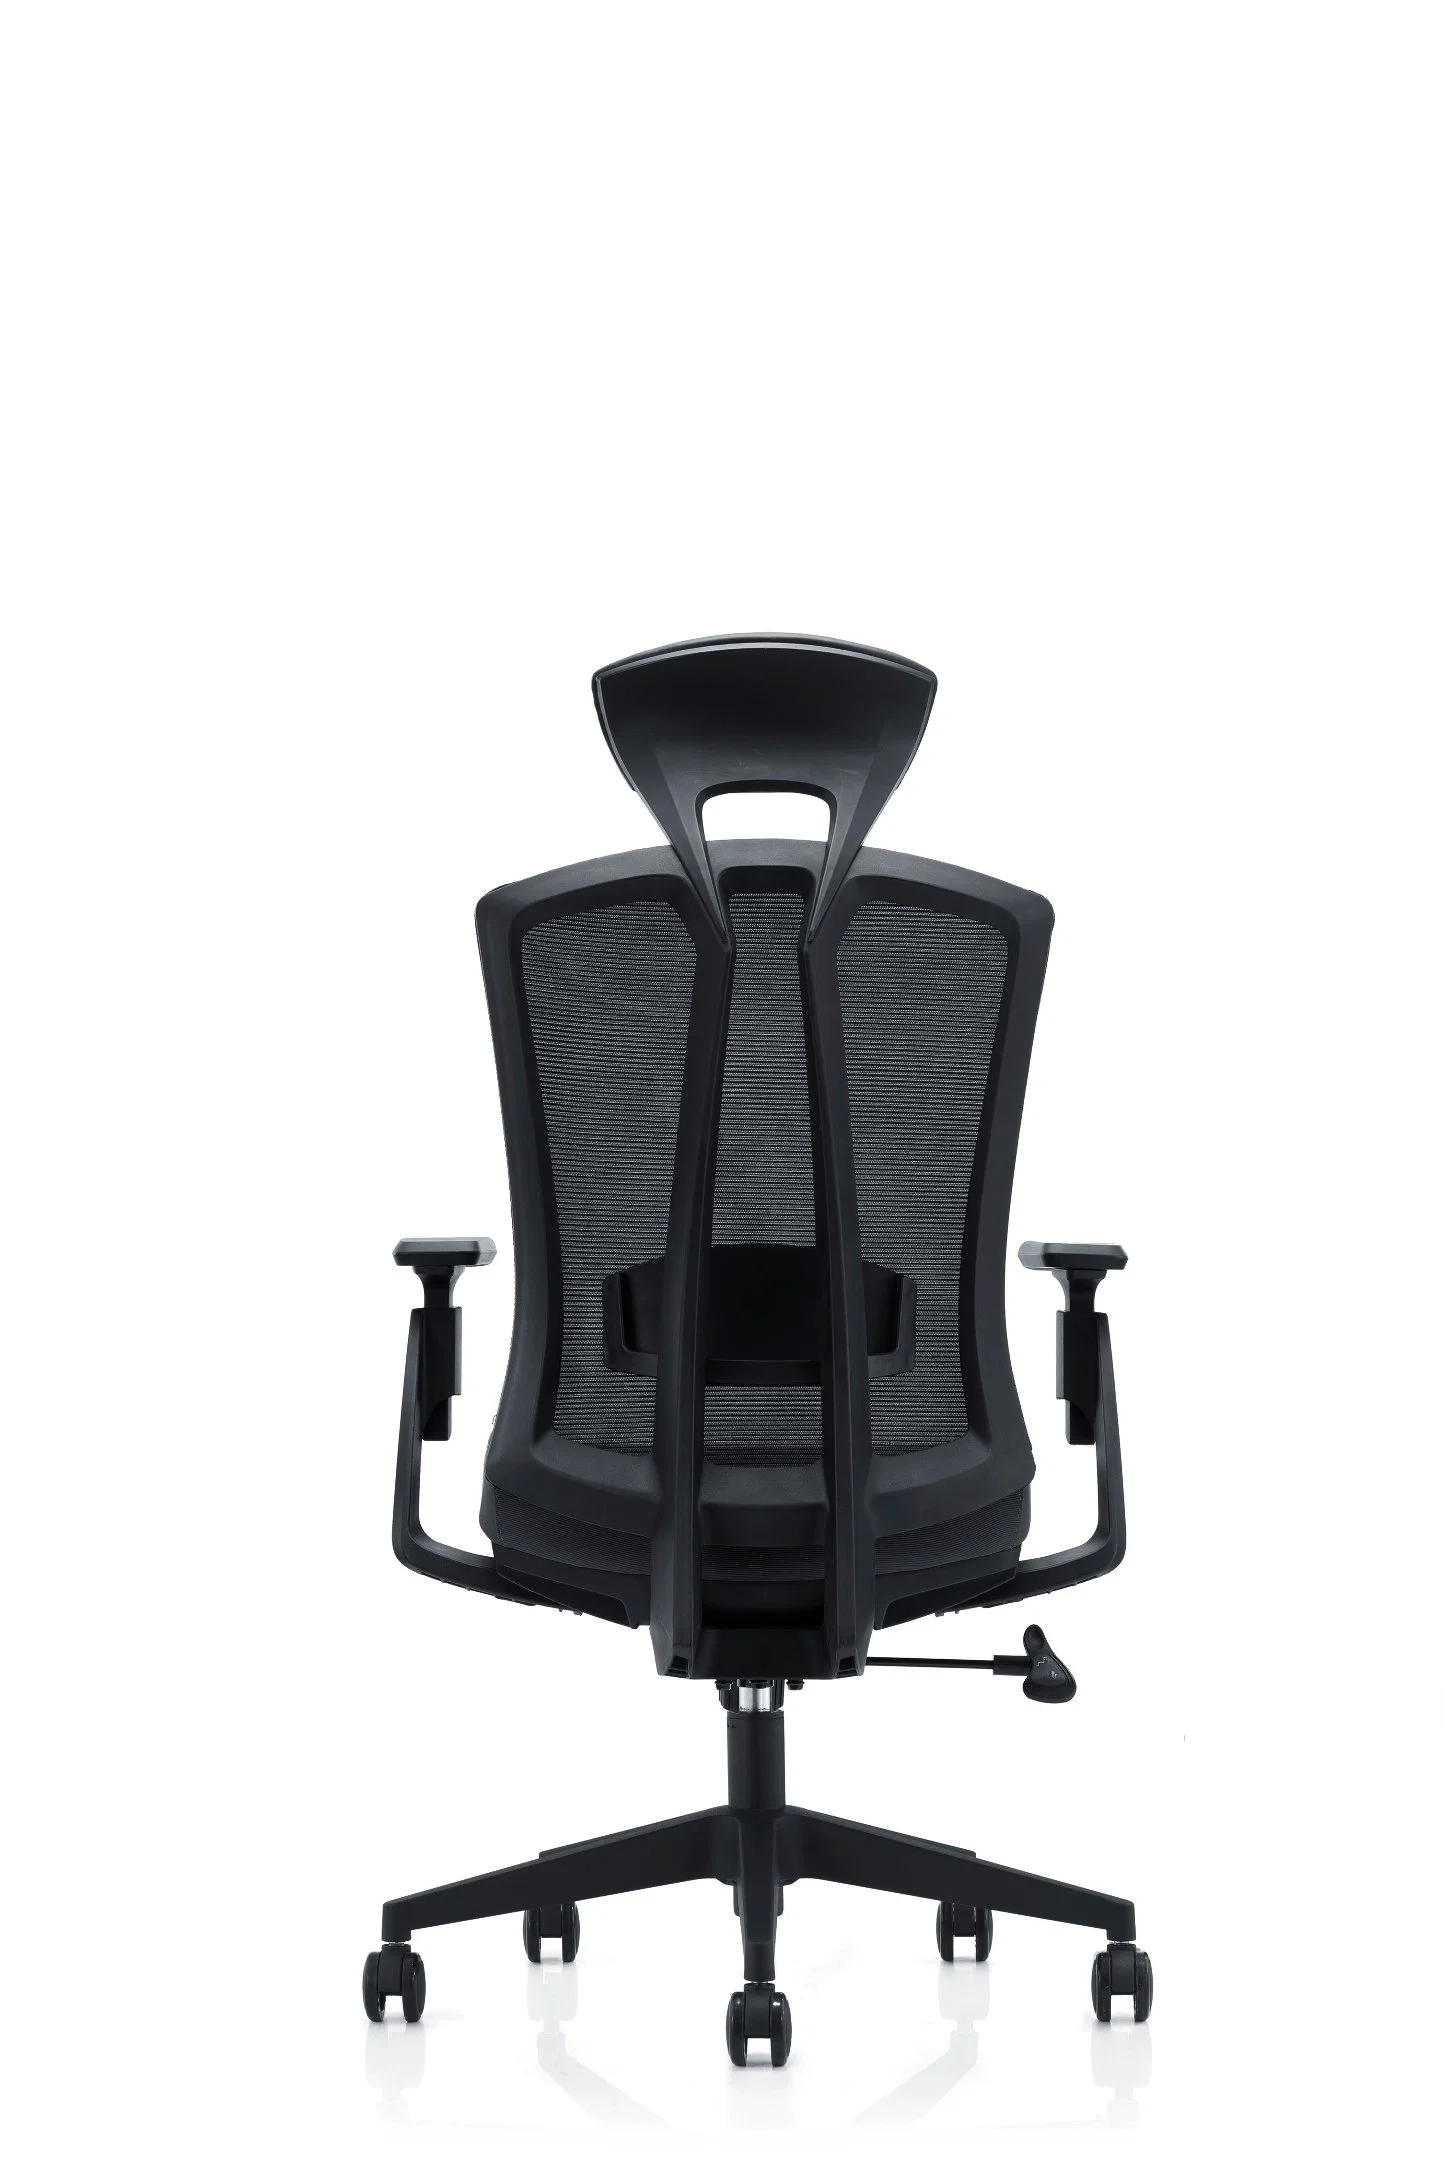 Chaise de bureau moderne et élégante avec dossier en maille, pivotante, ergonomique, réglable, avec soutien pour les jambes (HY-267)